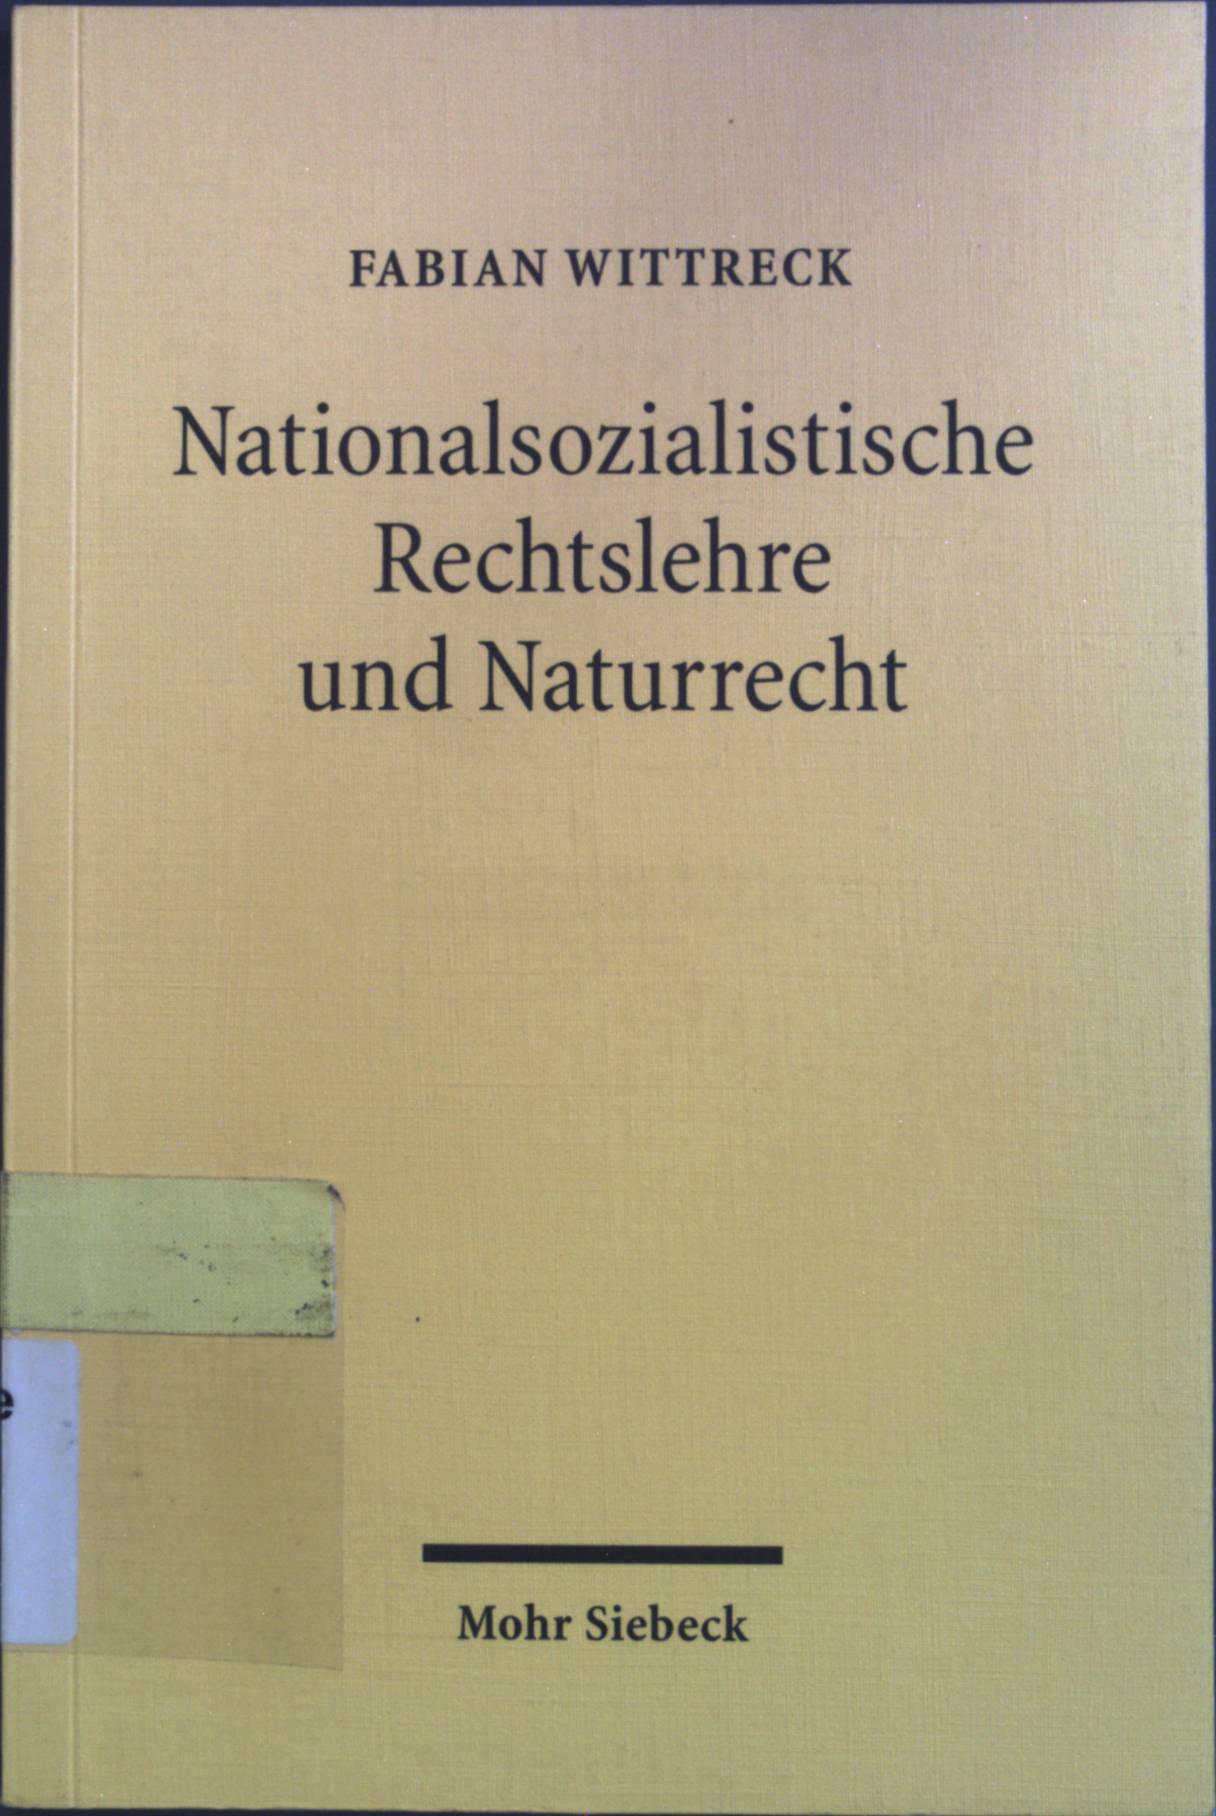 Nationalsozialistische Rechtslehre und Naturrecht : Affinität und Aversion. - Wittreck, Fabian